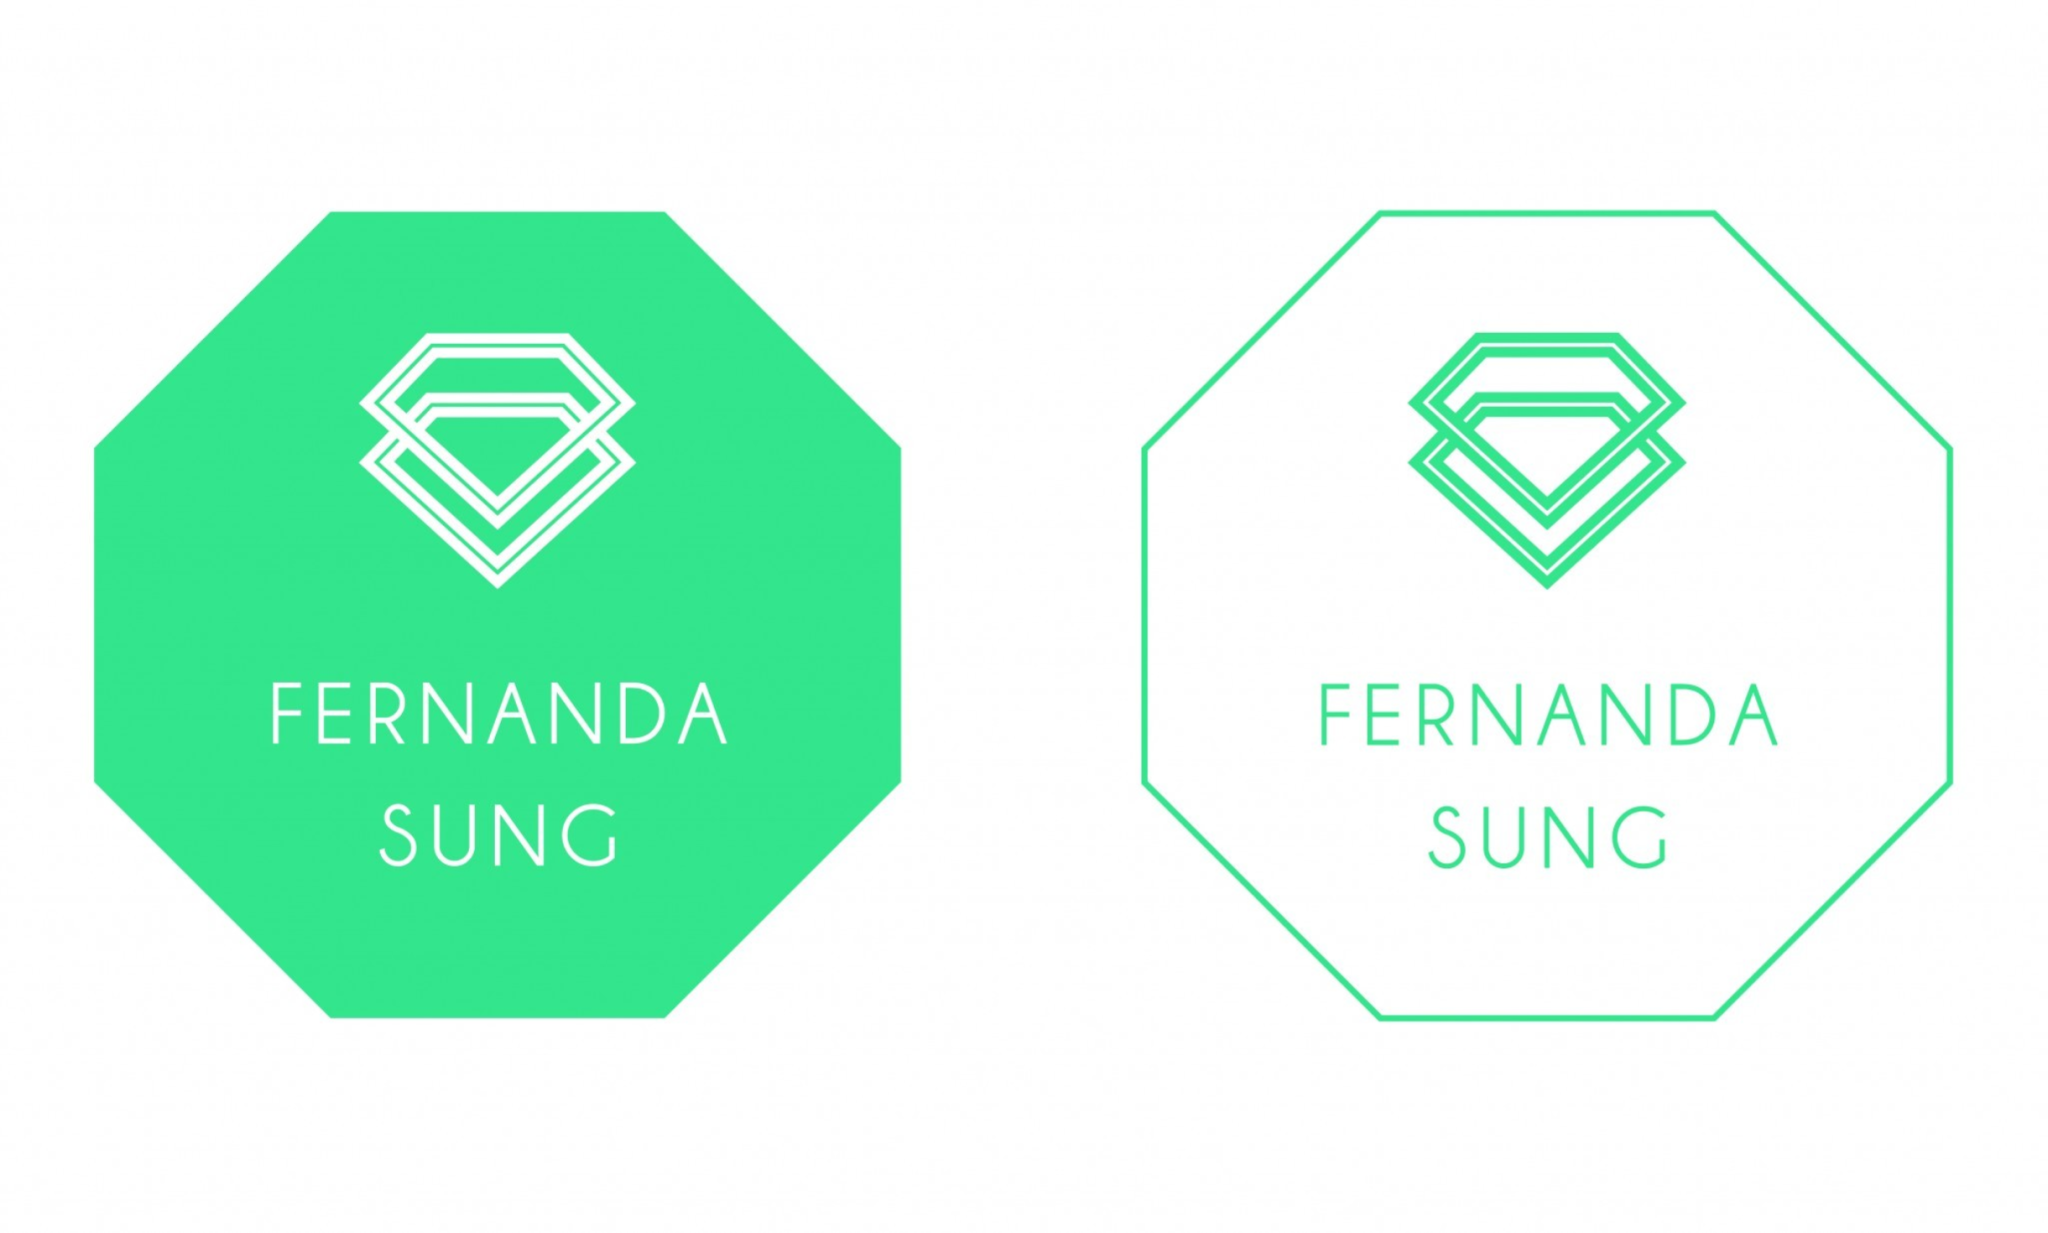 Fernanda logos